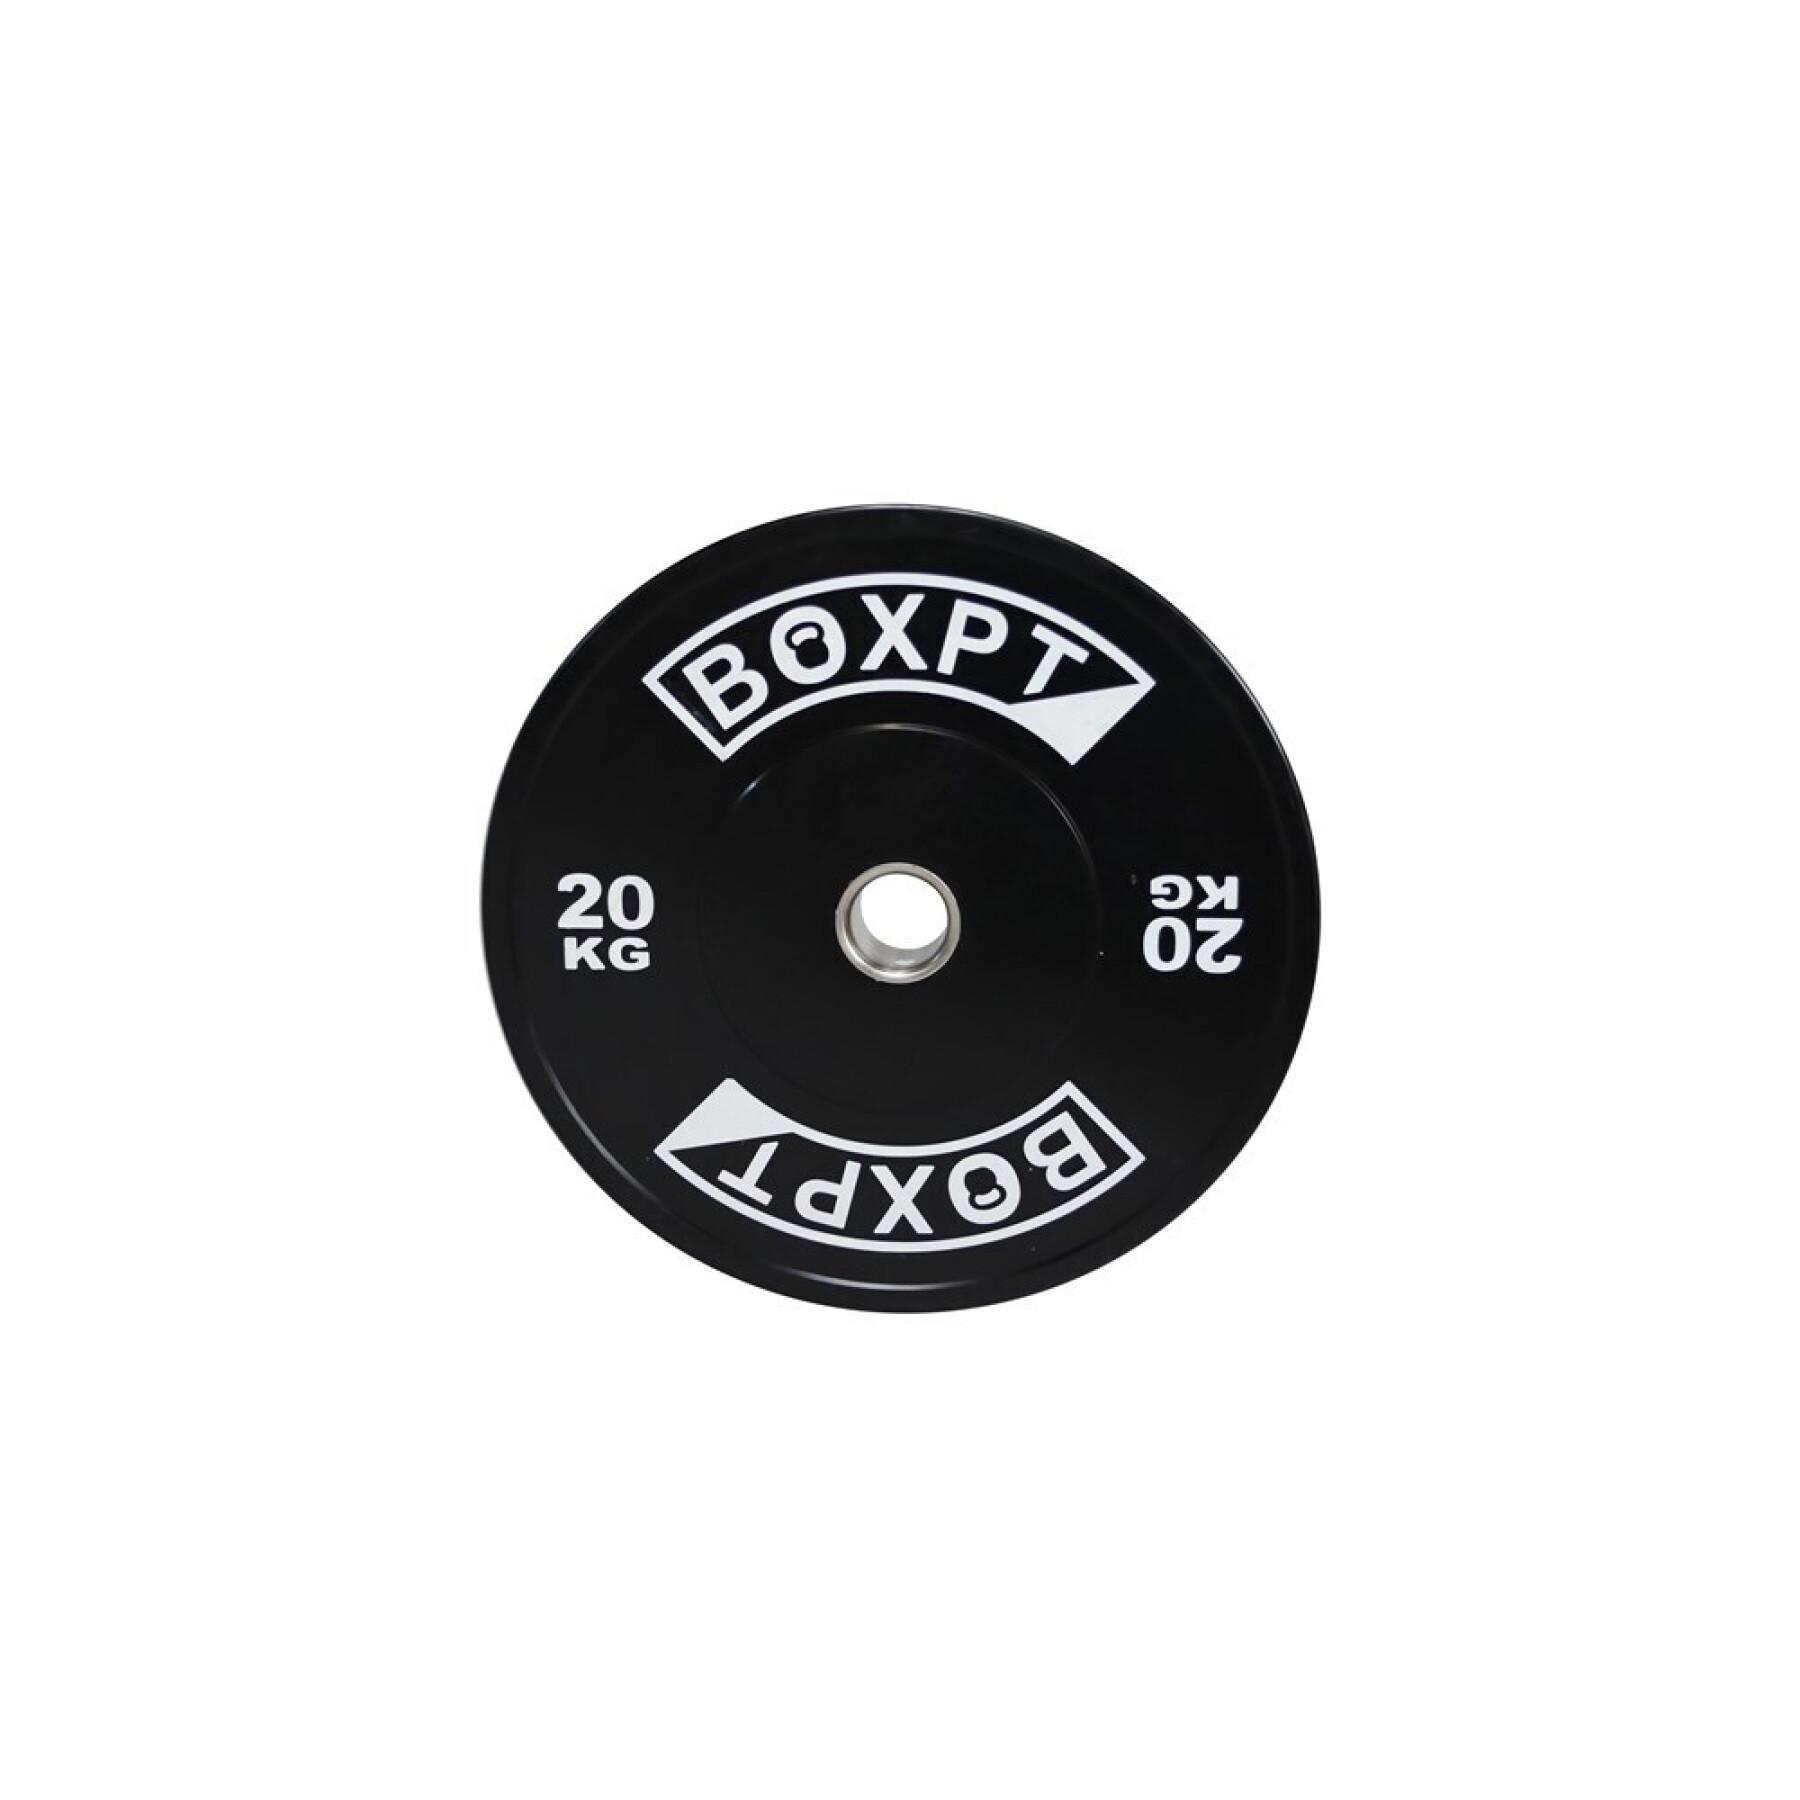 Bodybuilding disc Boxpt 2.0 - 20 kg